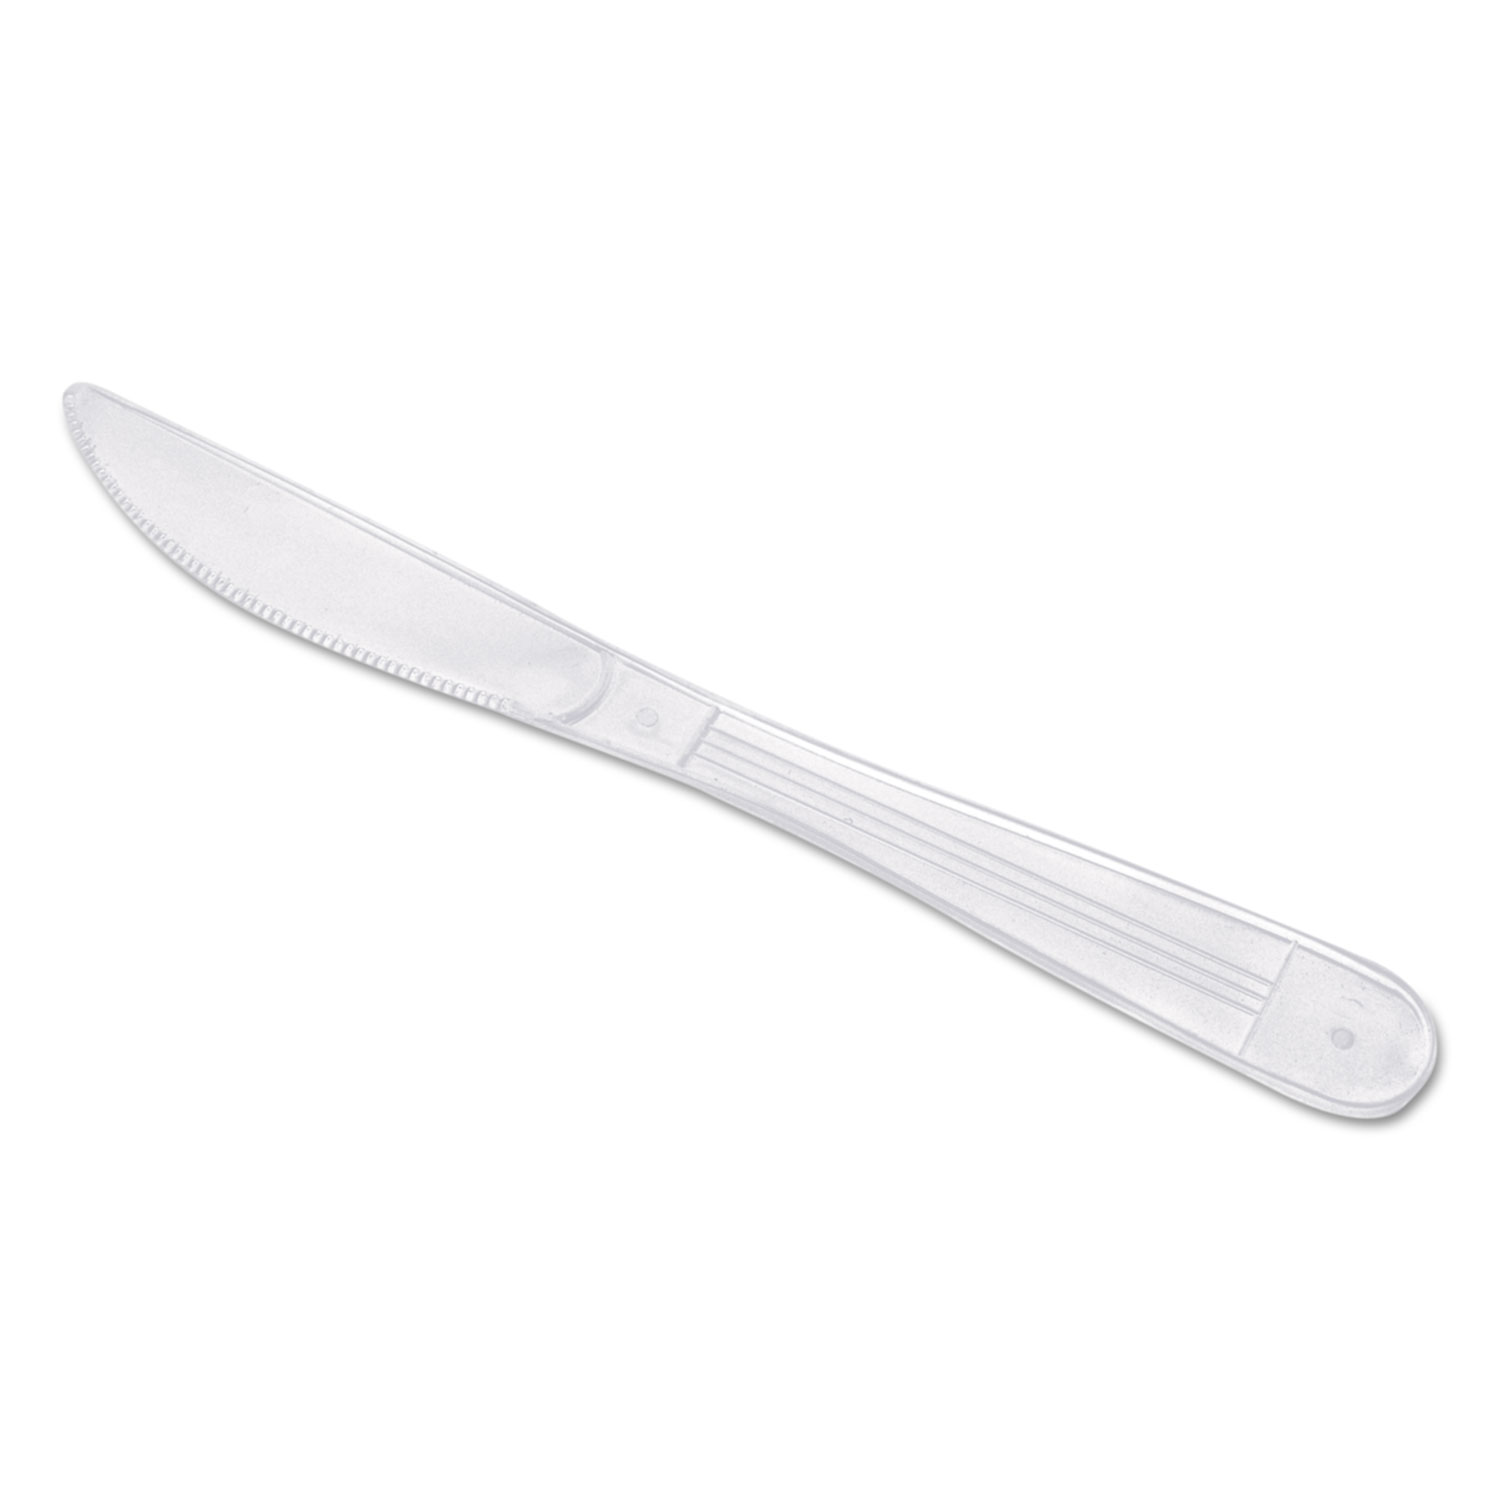  GEN GENHYWIWKN WraPolypropyleneed Cutlery, 7 1/2 Knife, Heavyweight, White, 1000/Carton (GENHYWIWKN) 